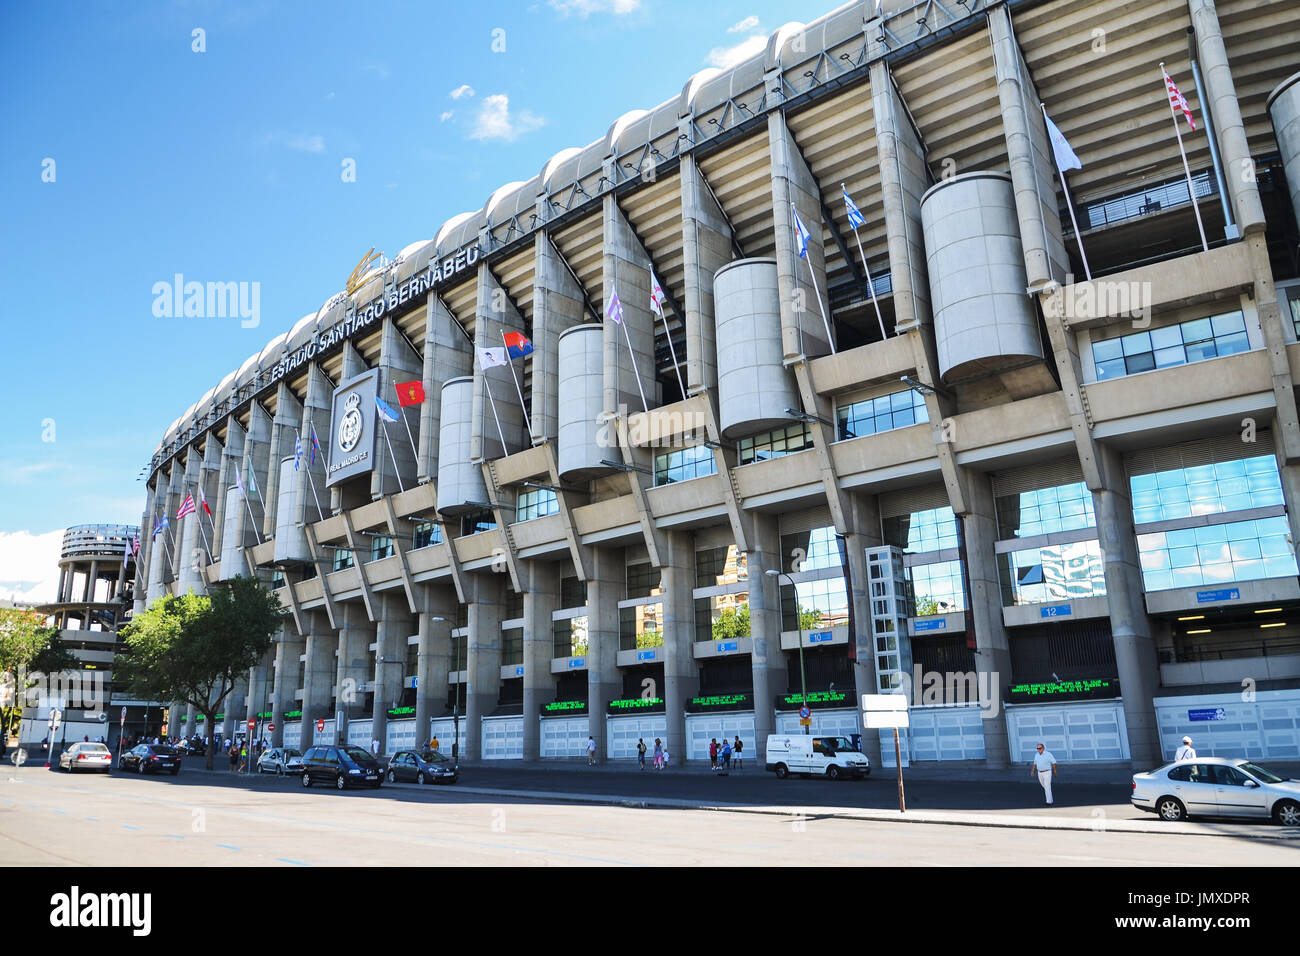 El Estadio Santiago Bernabeu del Real Madrid, España. Foto de stock